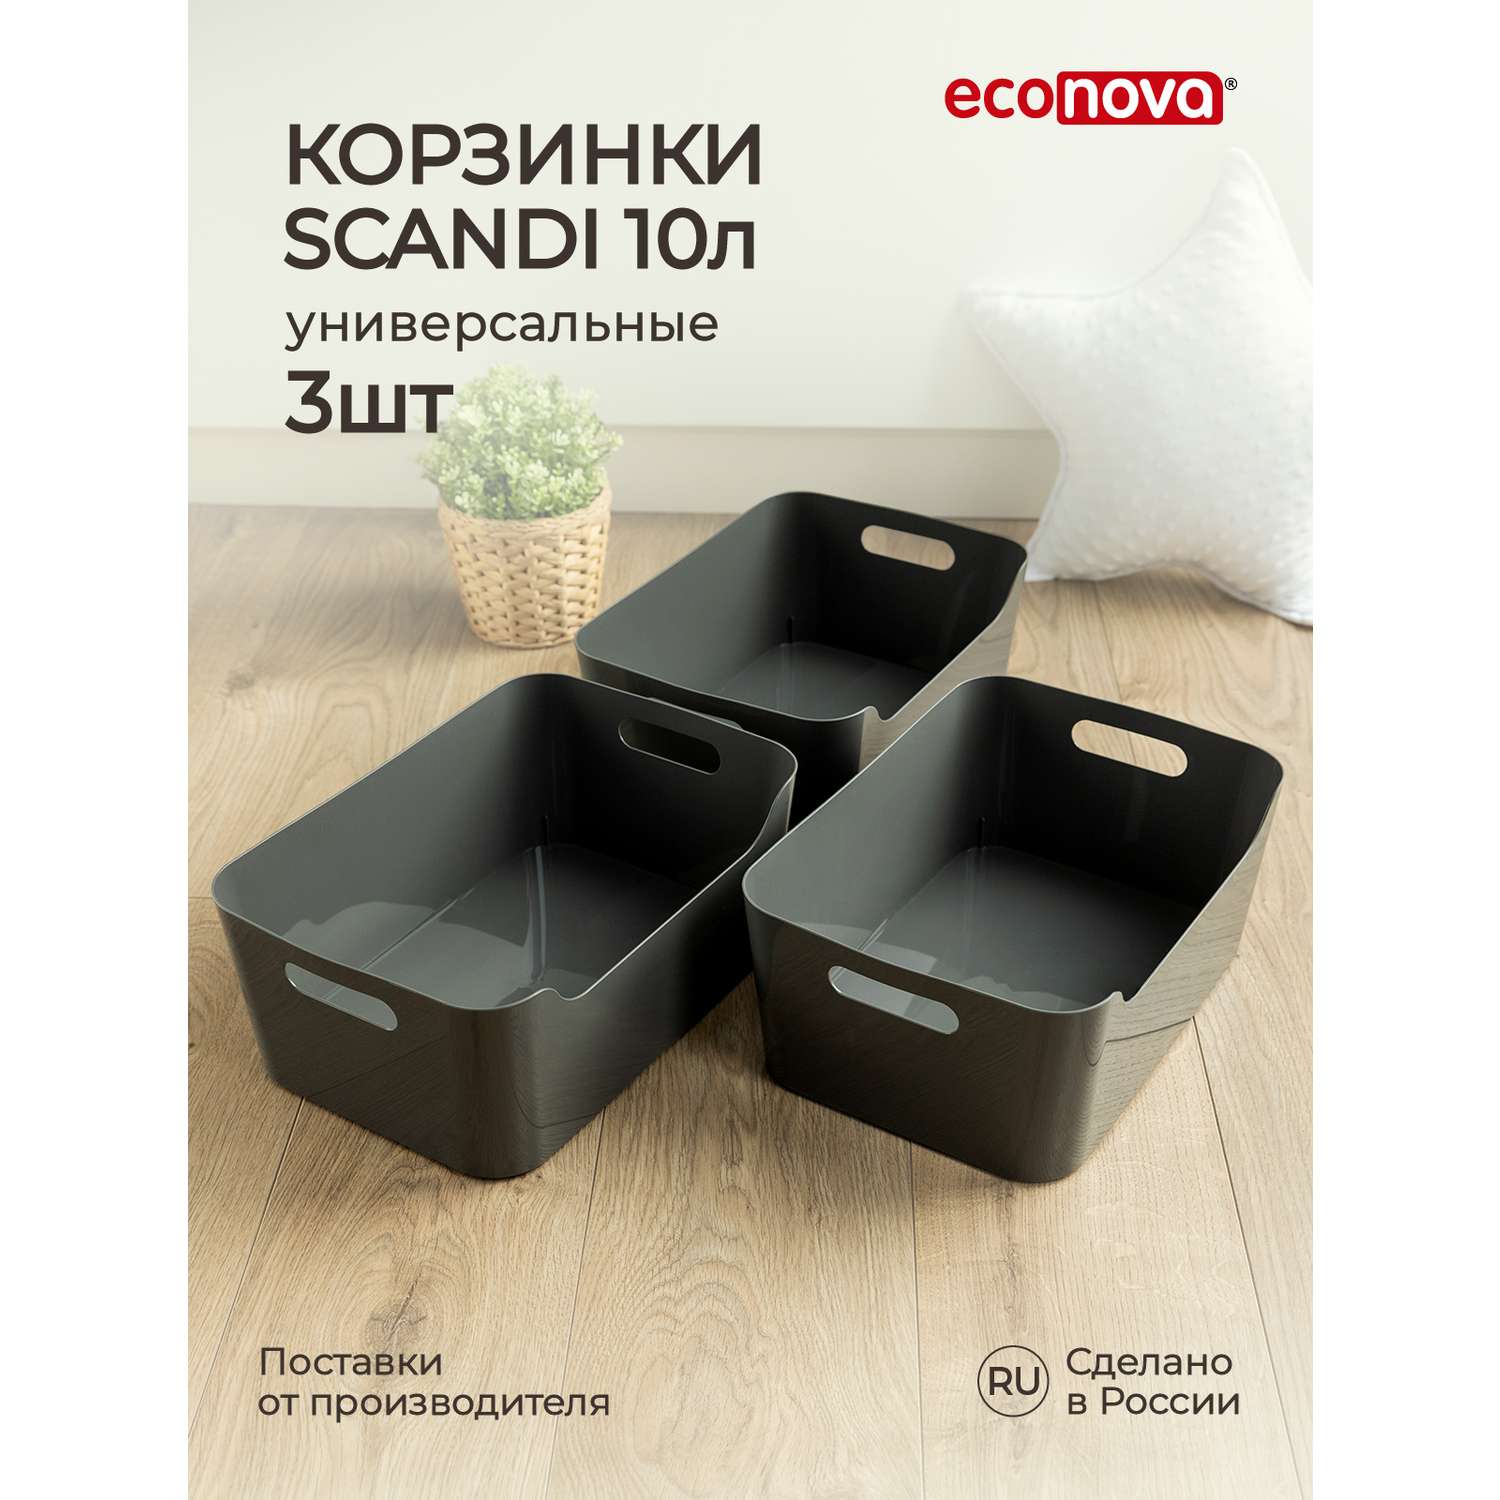 Комплект корзинок Econova универсальных Scandi 340x240x140 мм 10л 3шт cерый - фото 1